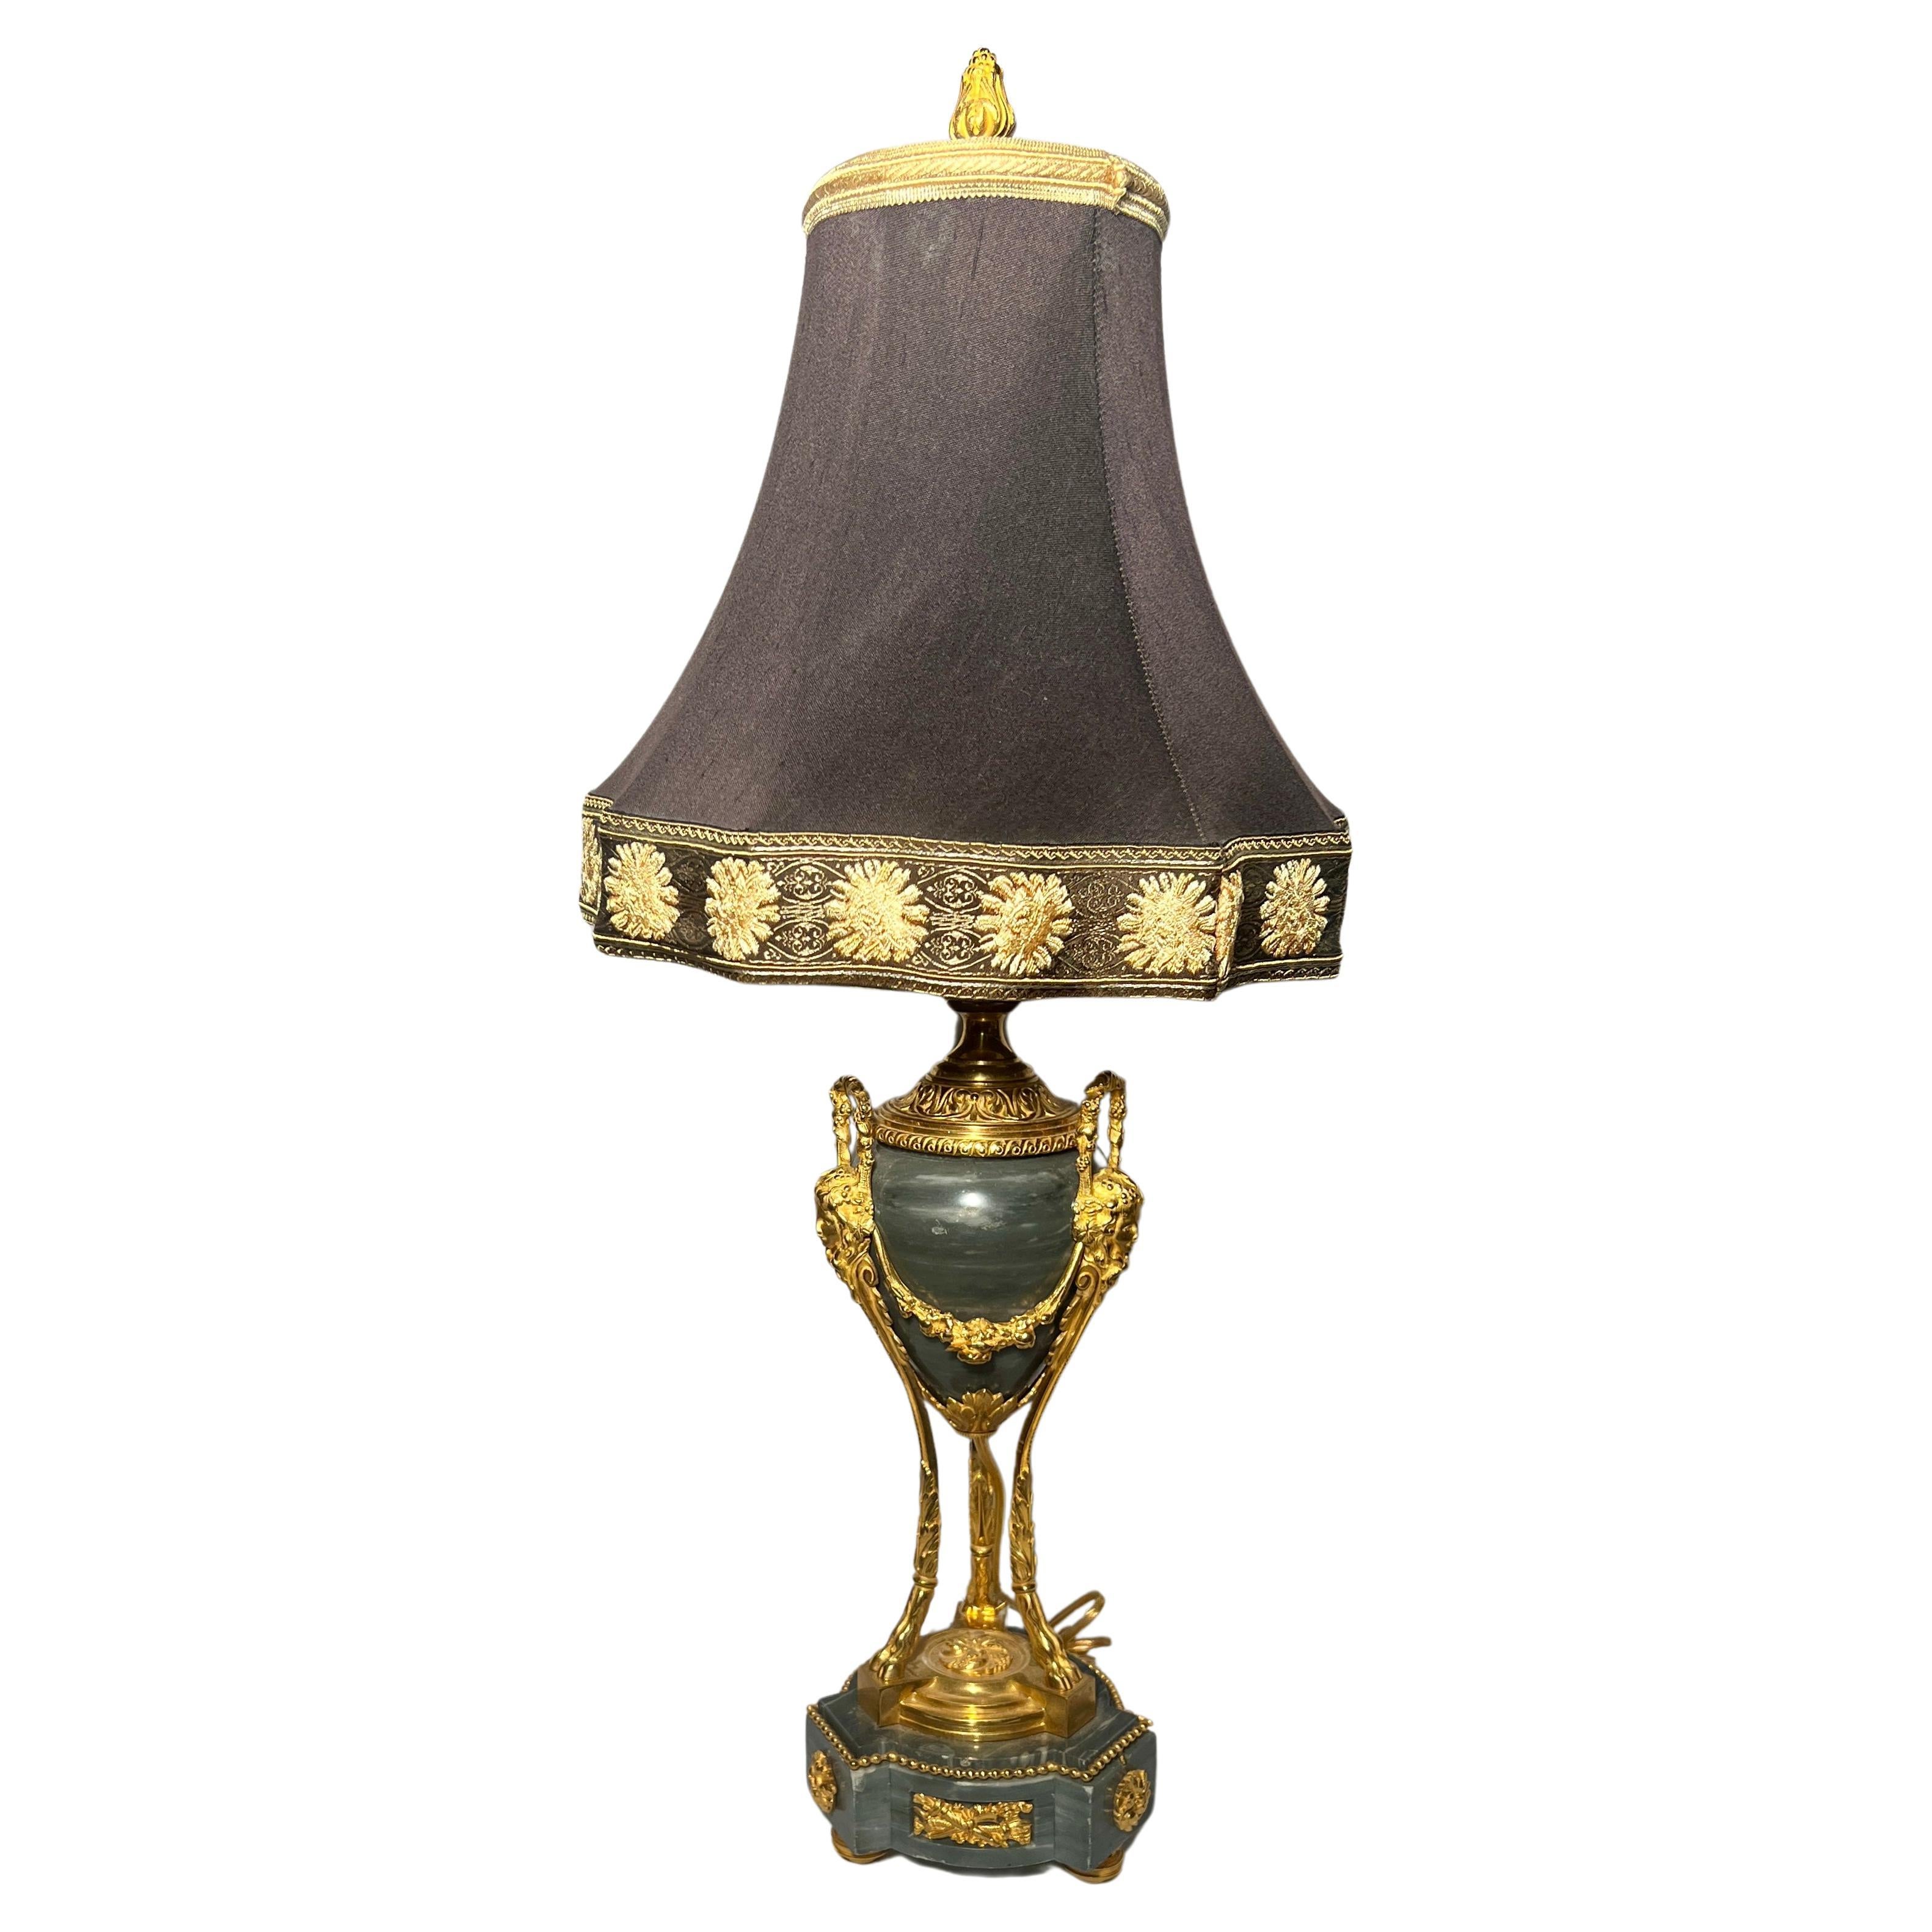 Antike französische Louis-XVI-Lampe aus Ormulu und grünem Marmor, um 1875-1885.
Bespoke Shade 12